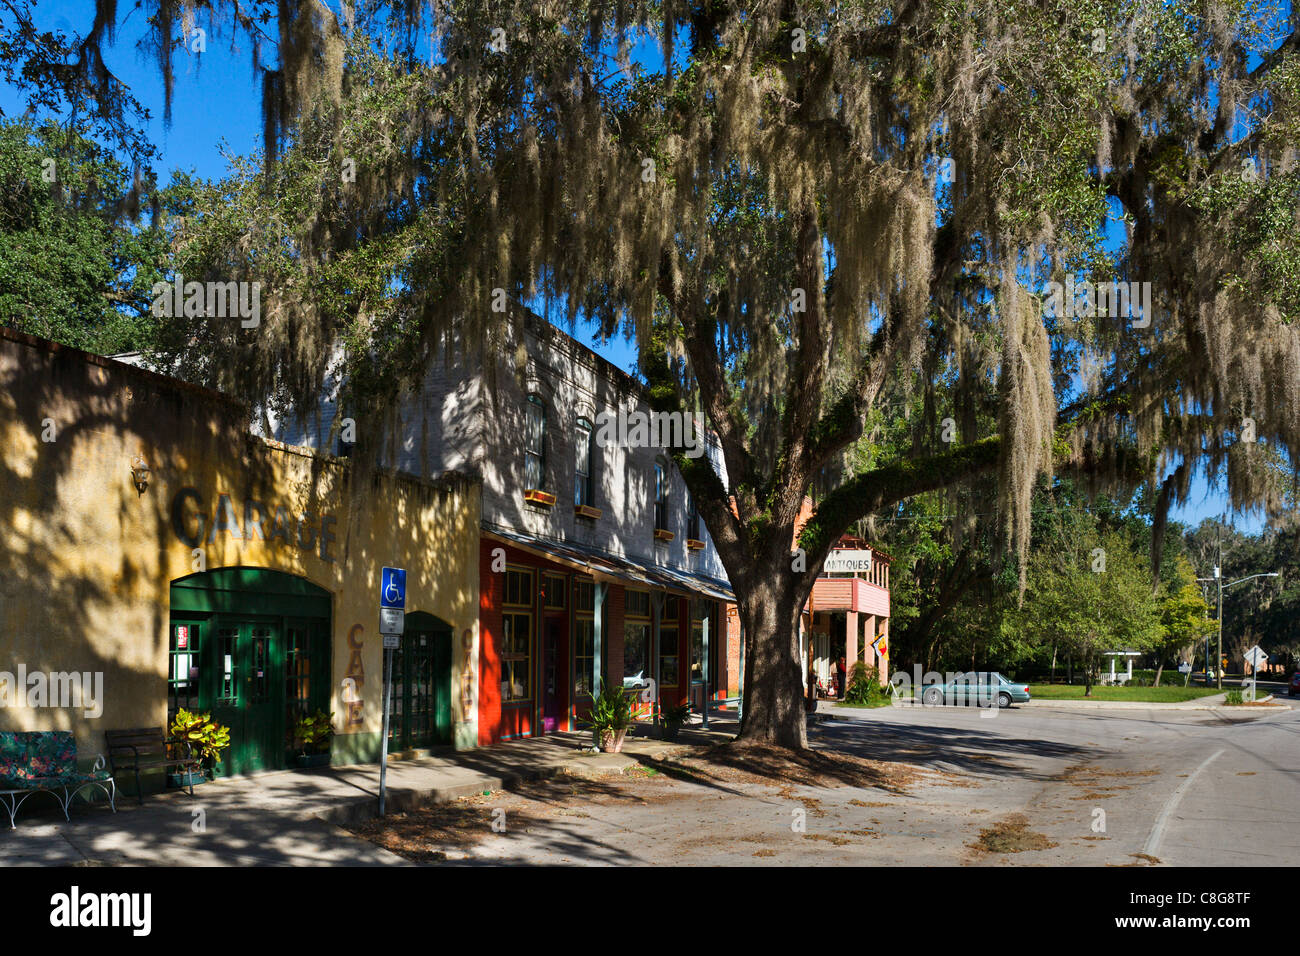 Main Street in der historischen alten Stadt von Micanopy, Nord-Zentral-Florida, USA Stockfoto